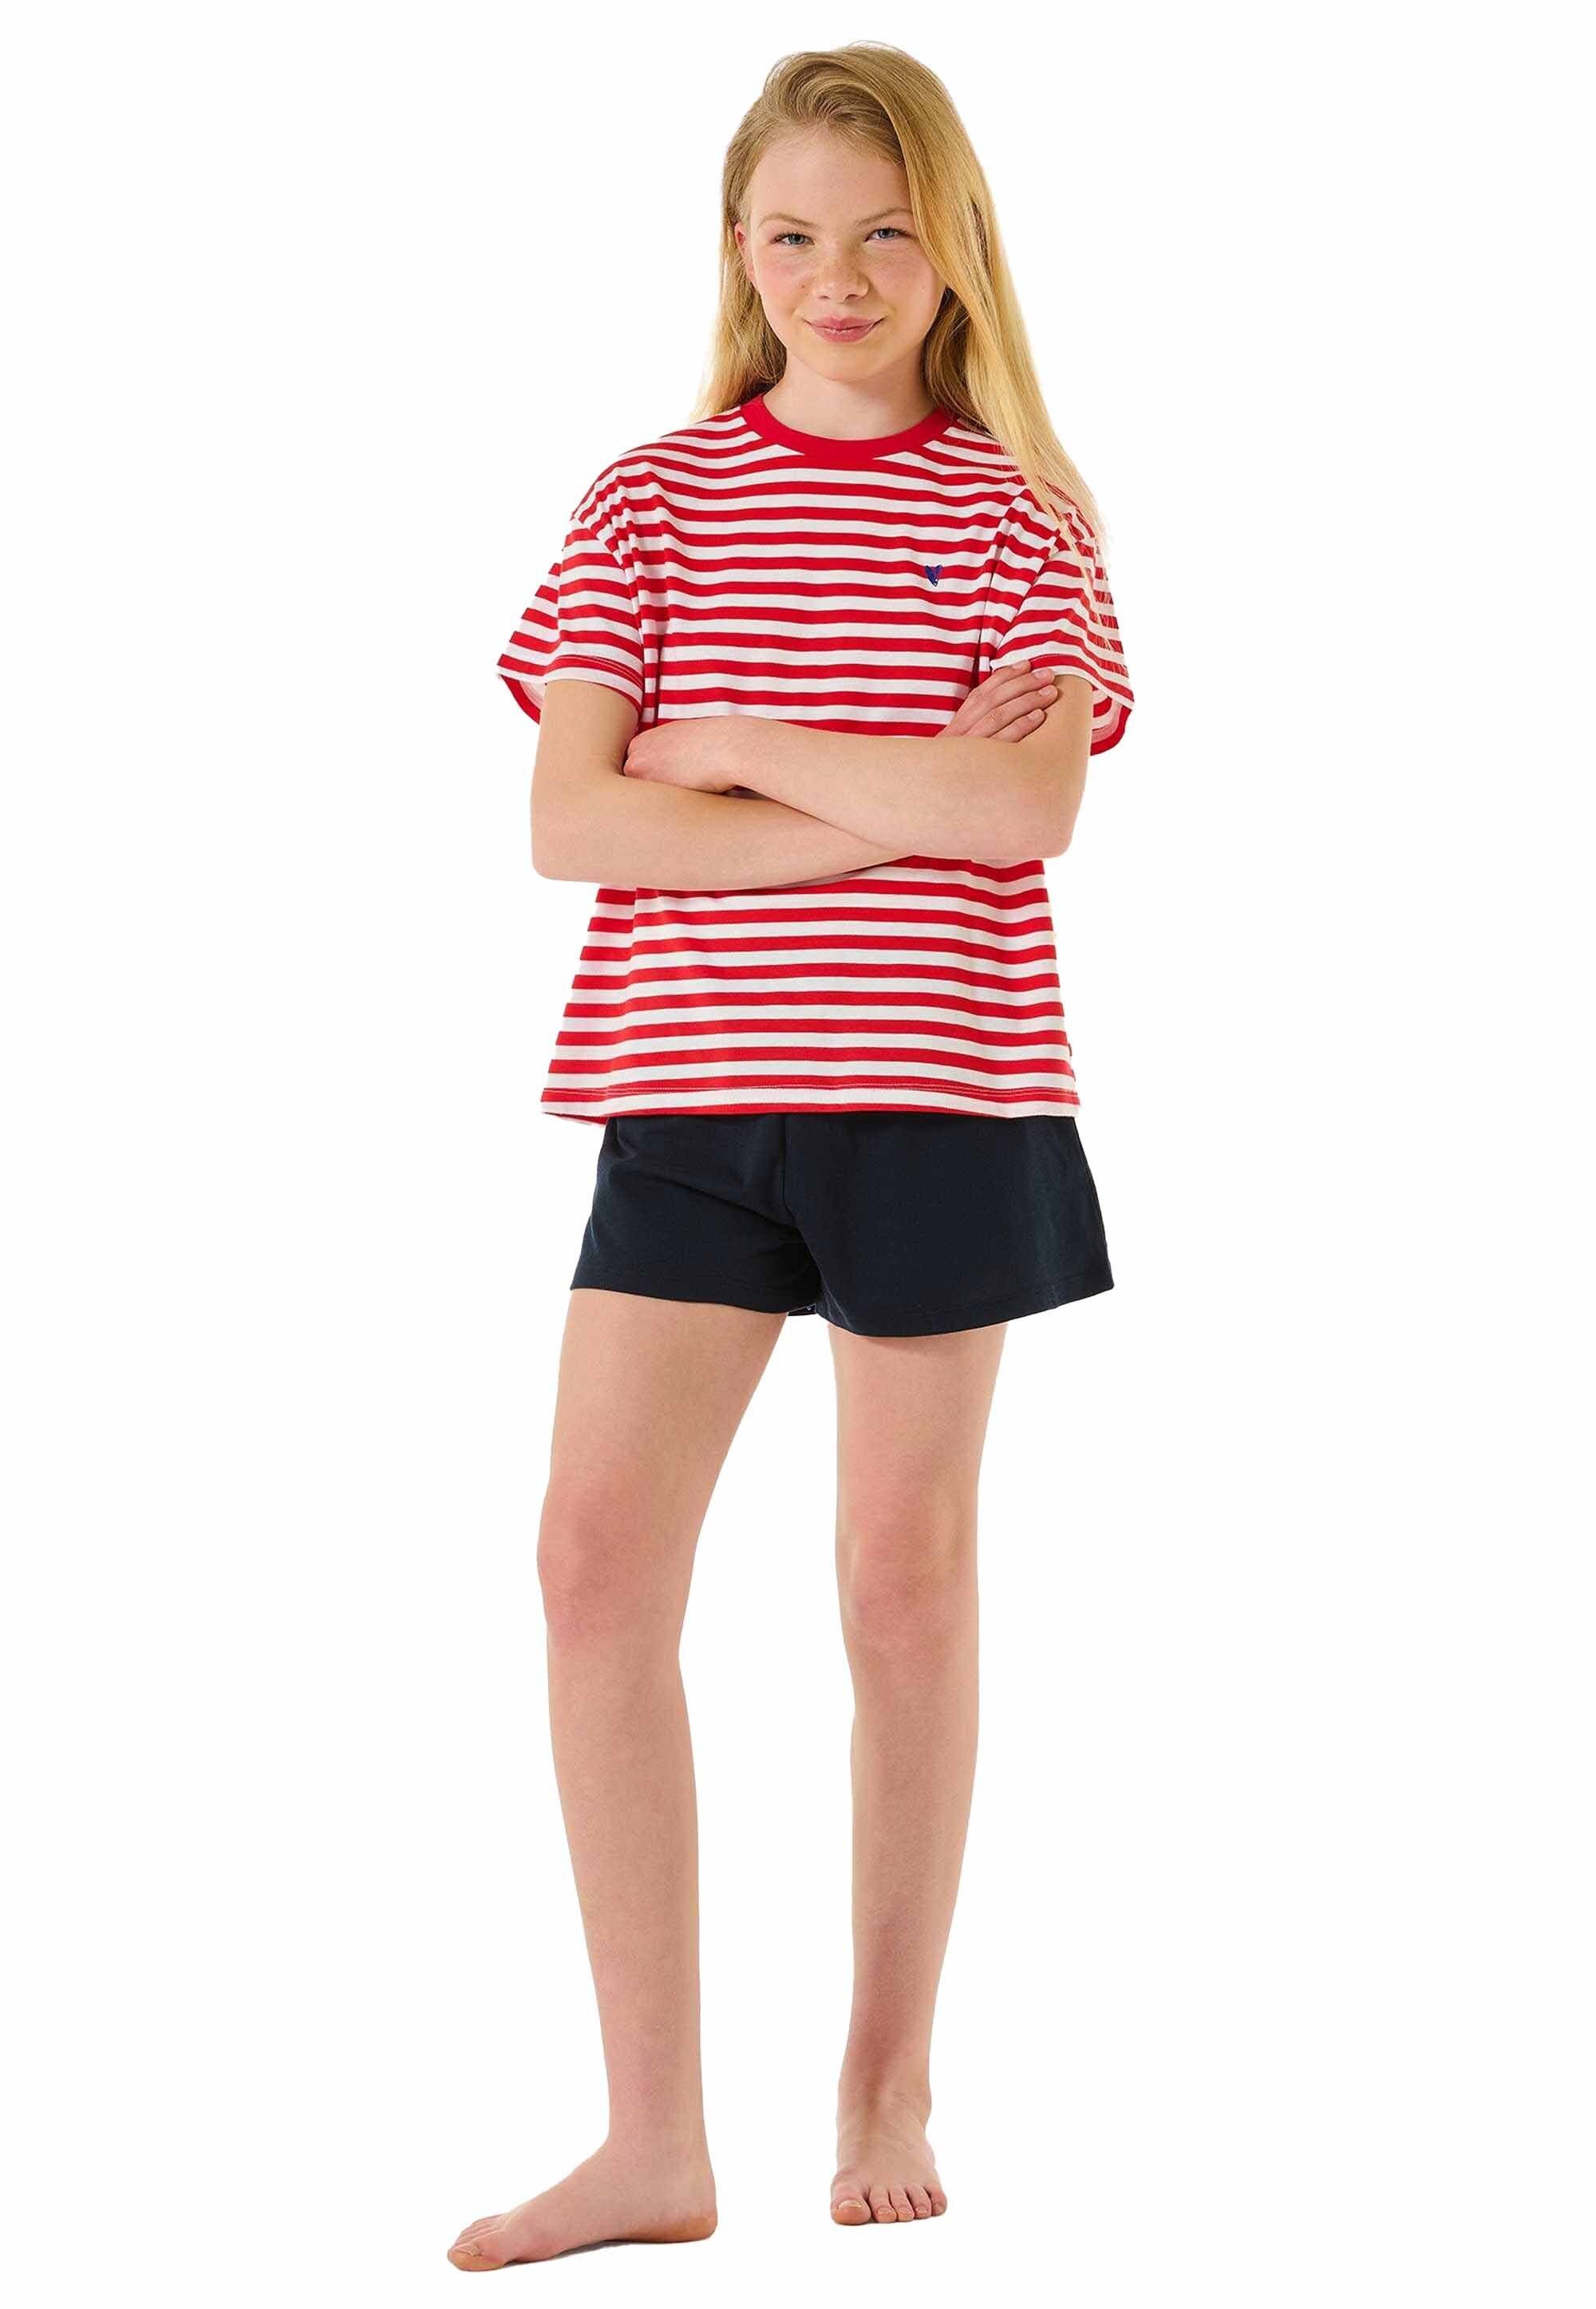 Teens Mädchen Schlafanzug Set Schiesser Pyjama - Rot/Weiß/Dunkelblau kurz,